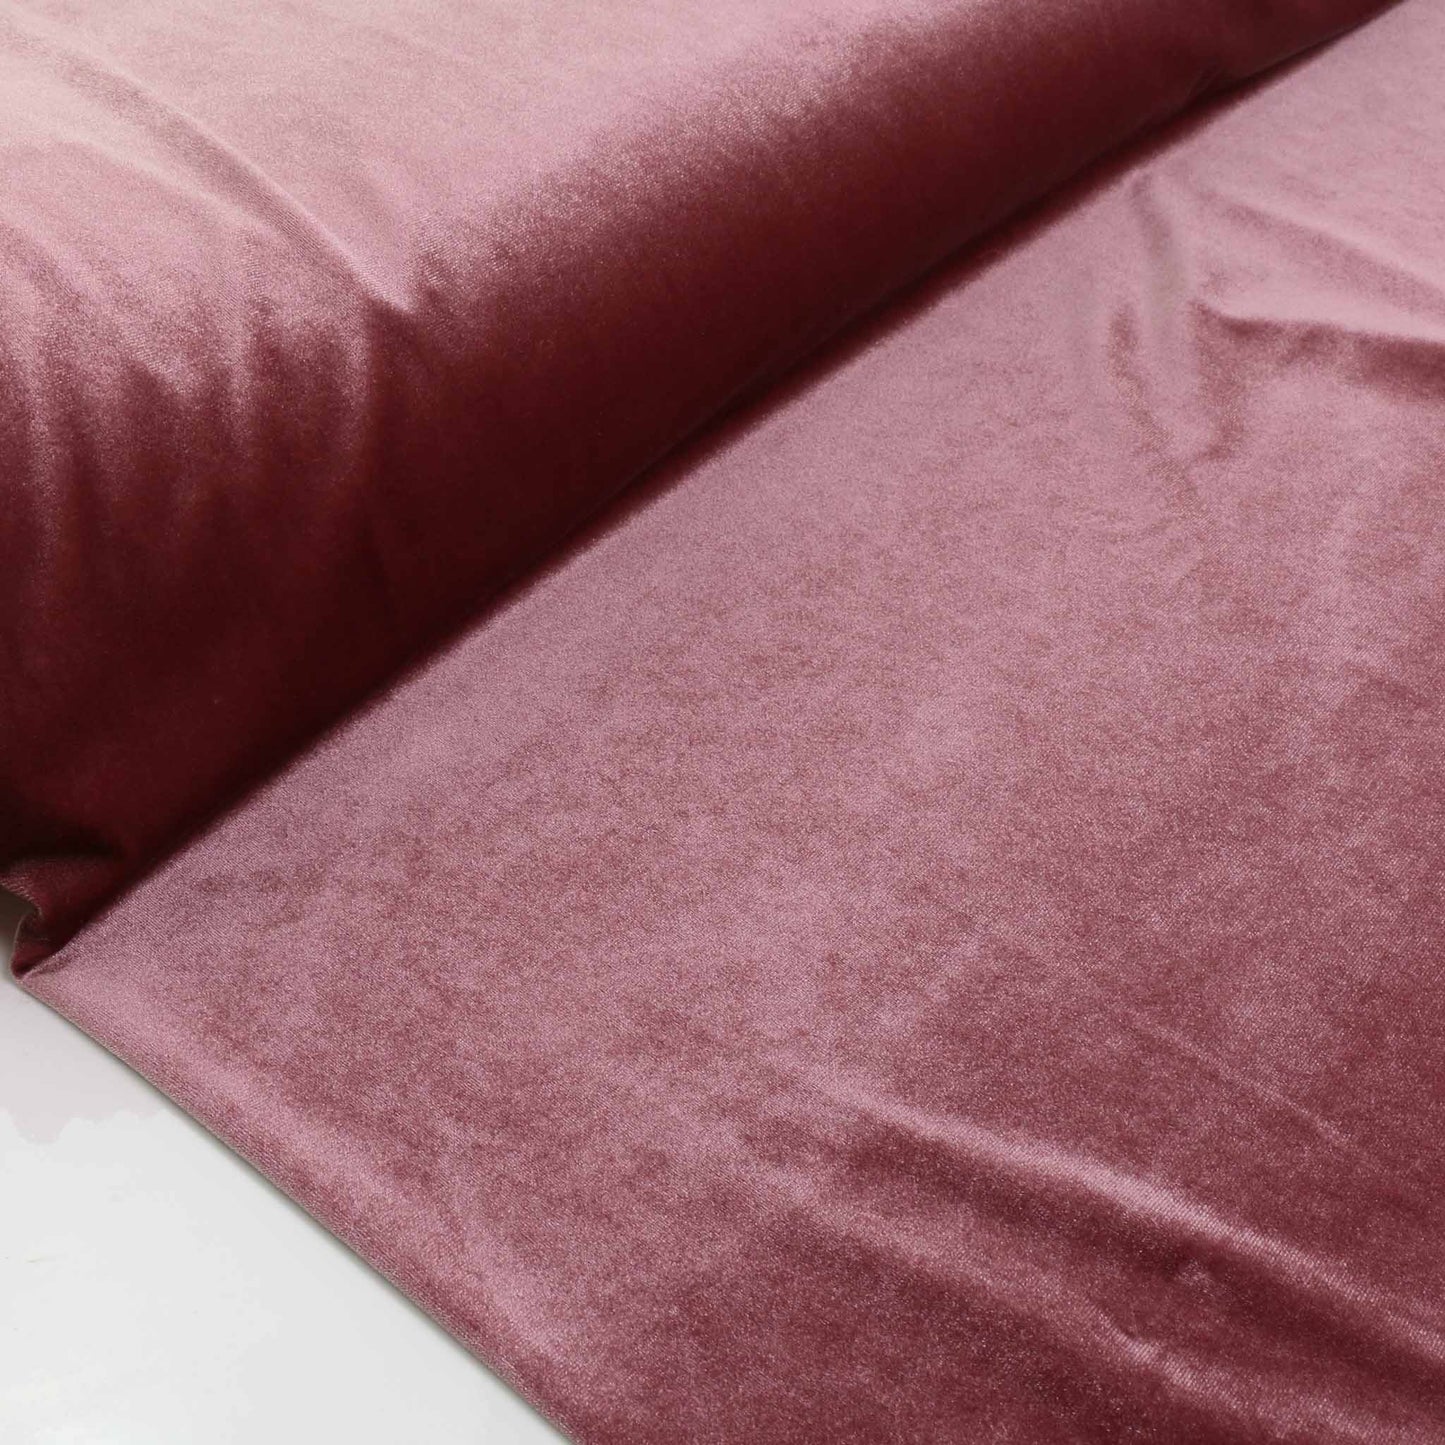 Velour - Dusky pink, Terracotta